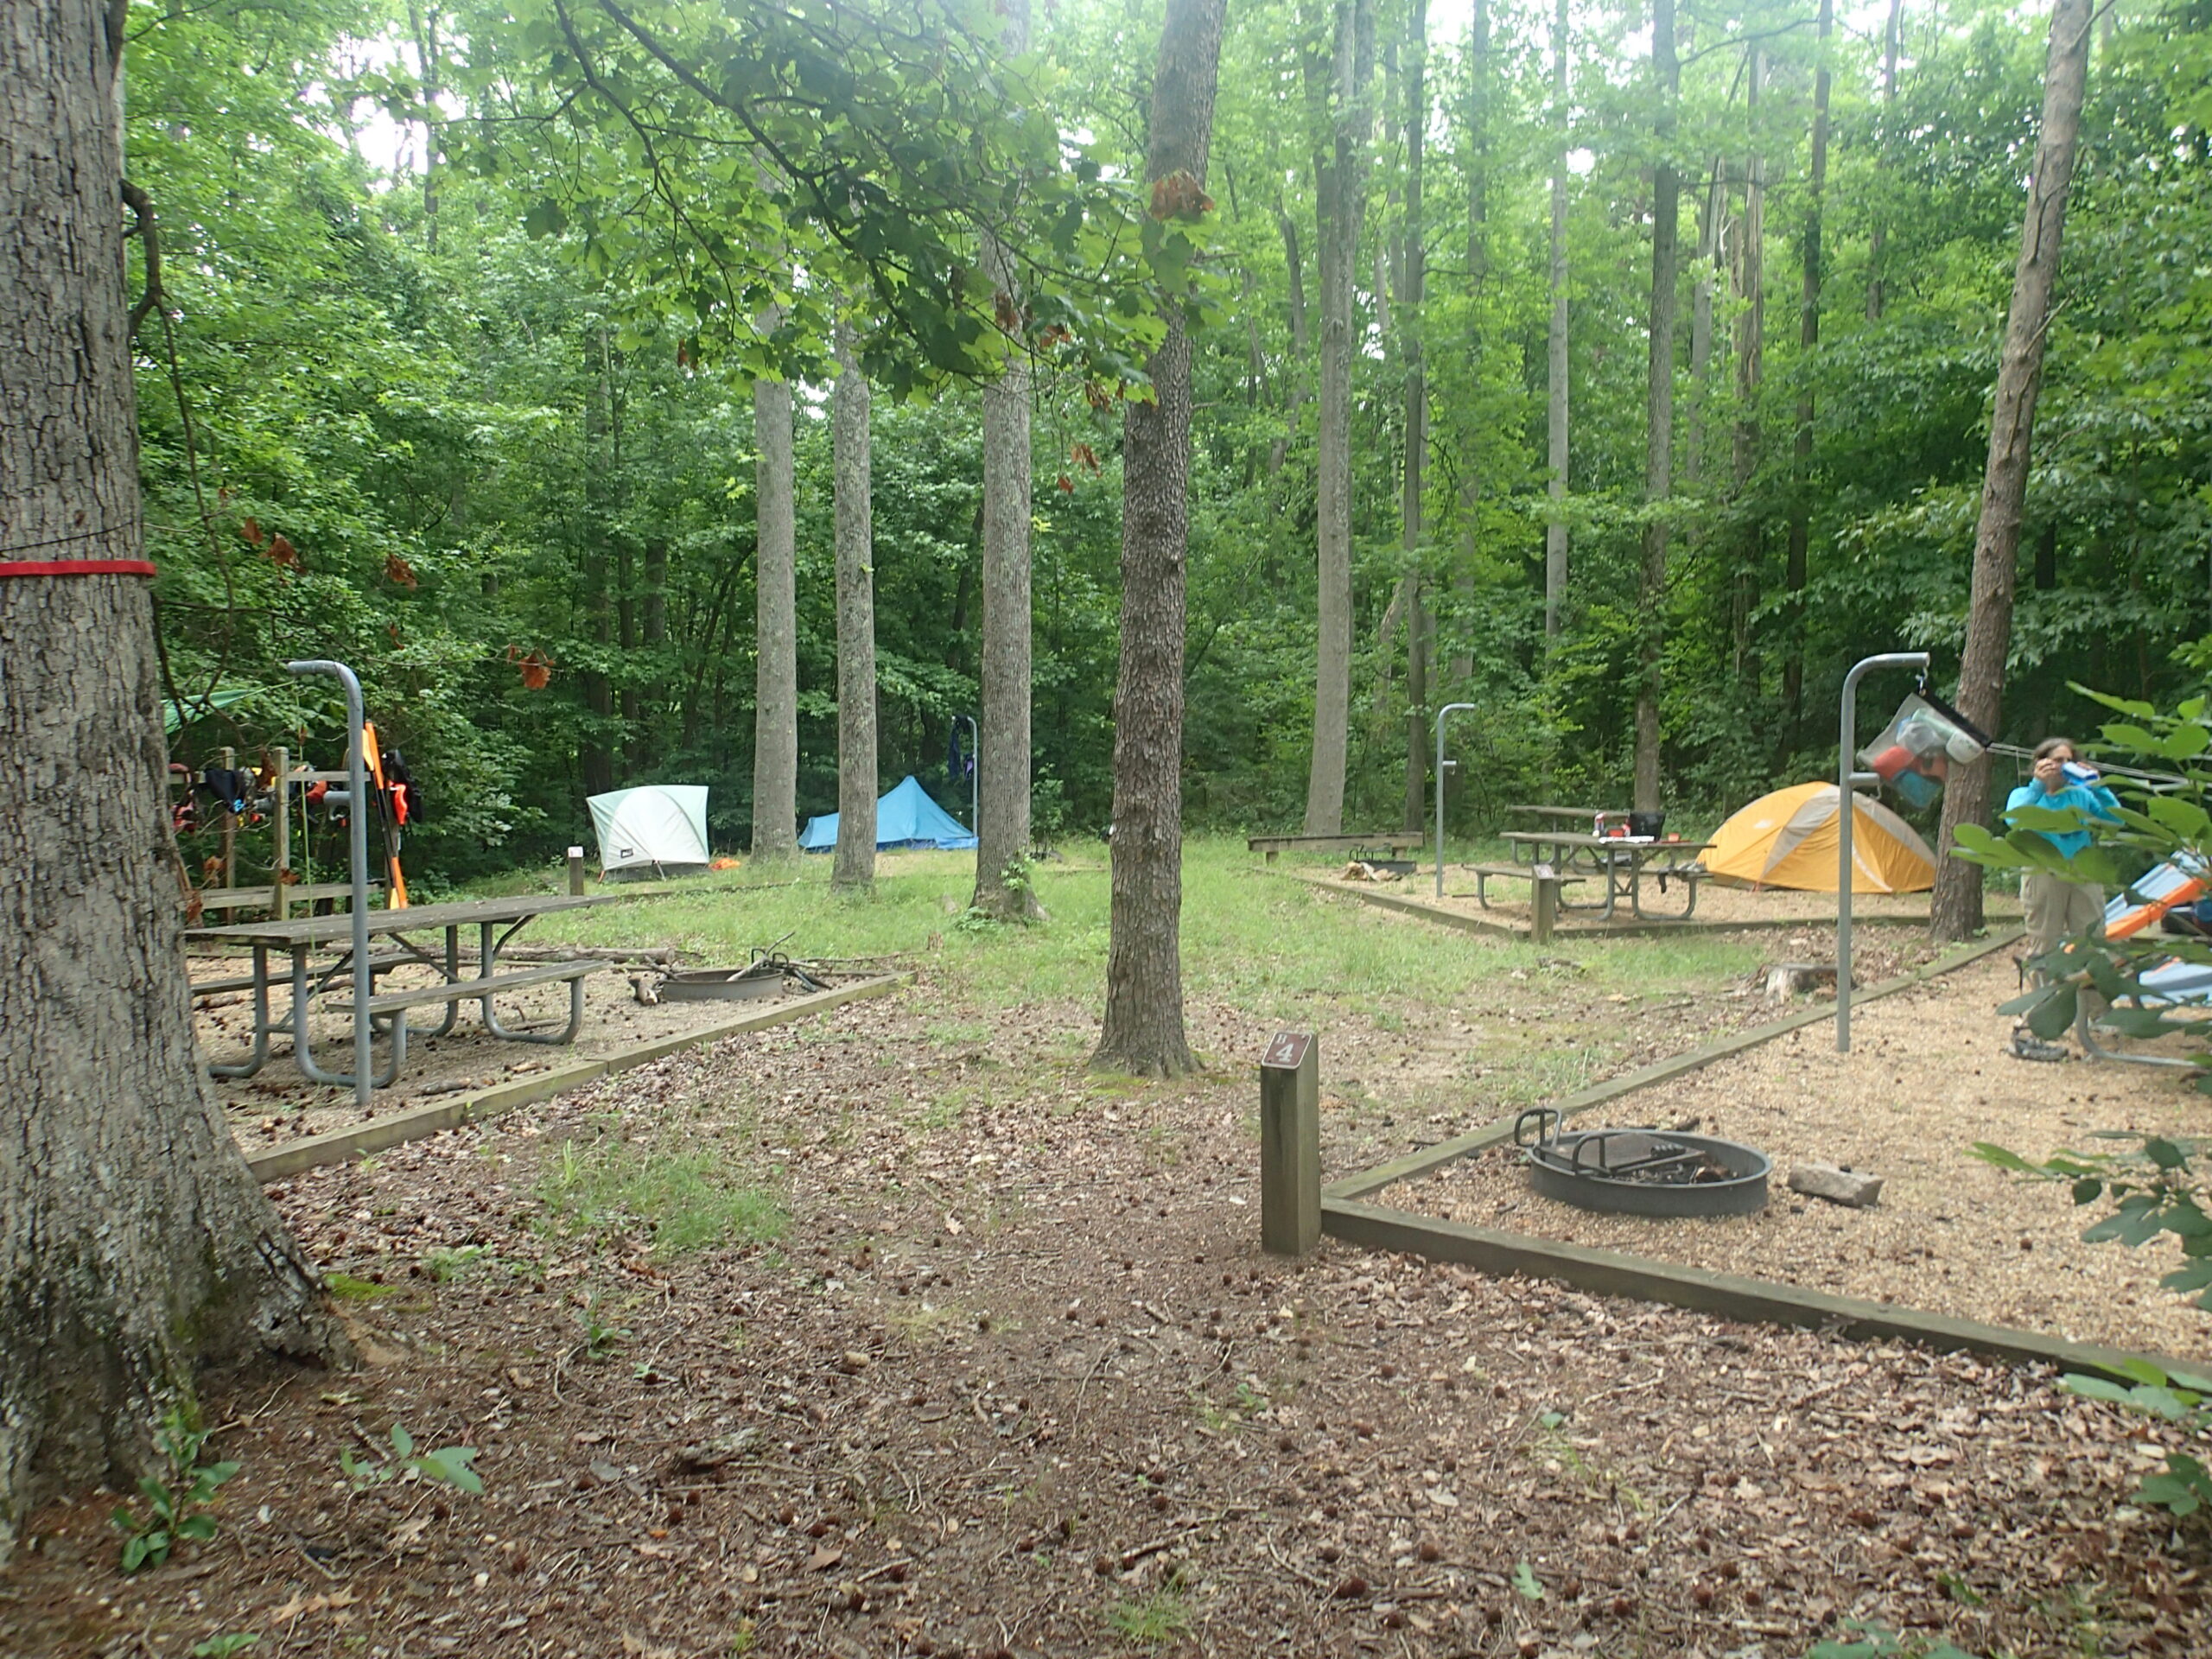 CPA campers at Leesylvania State Park, VA